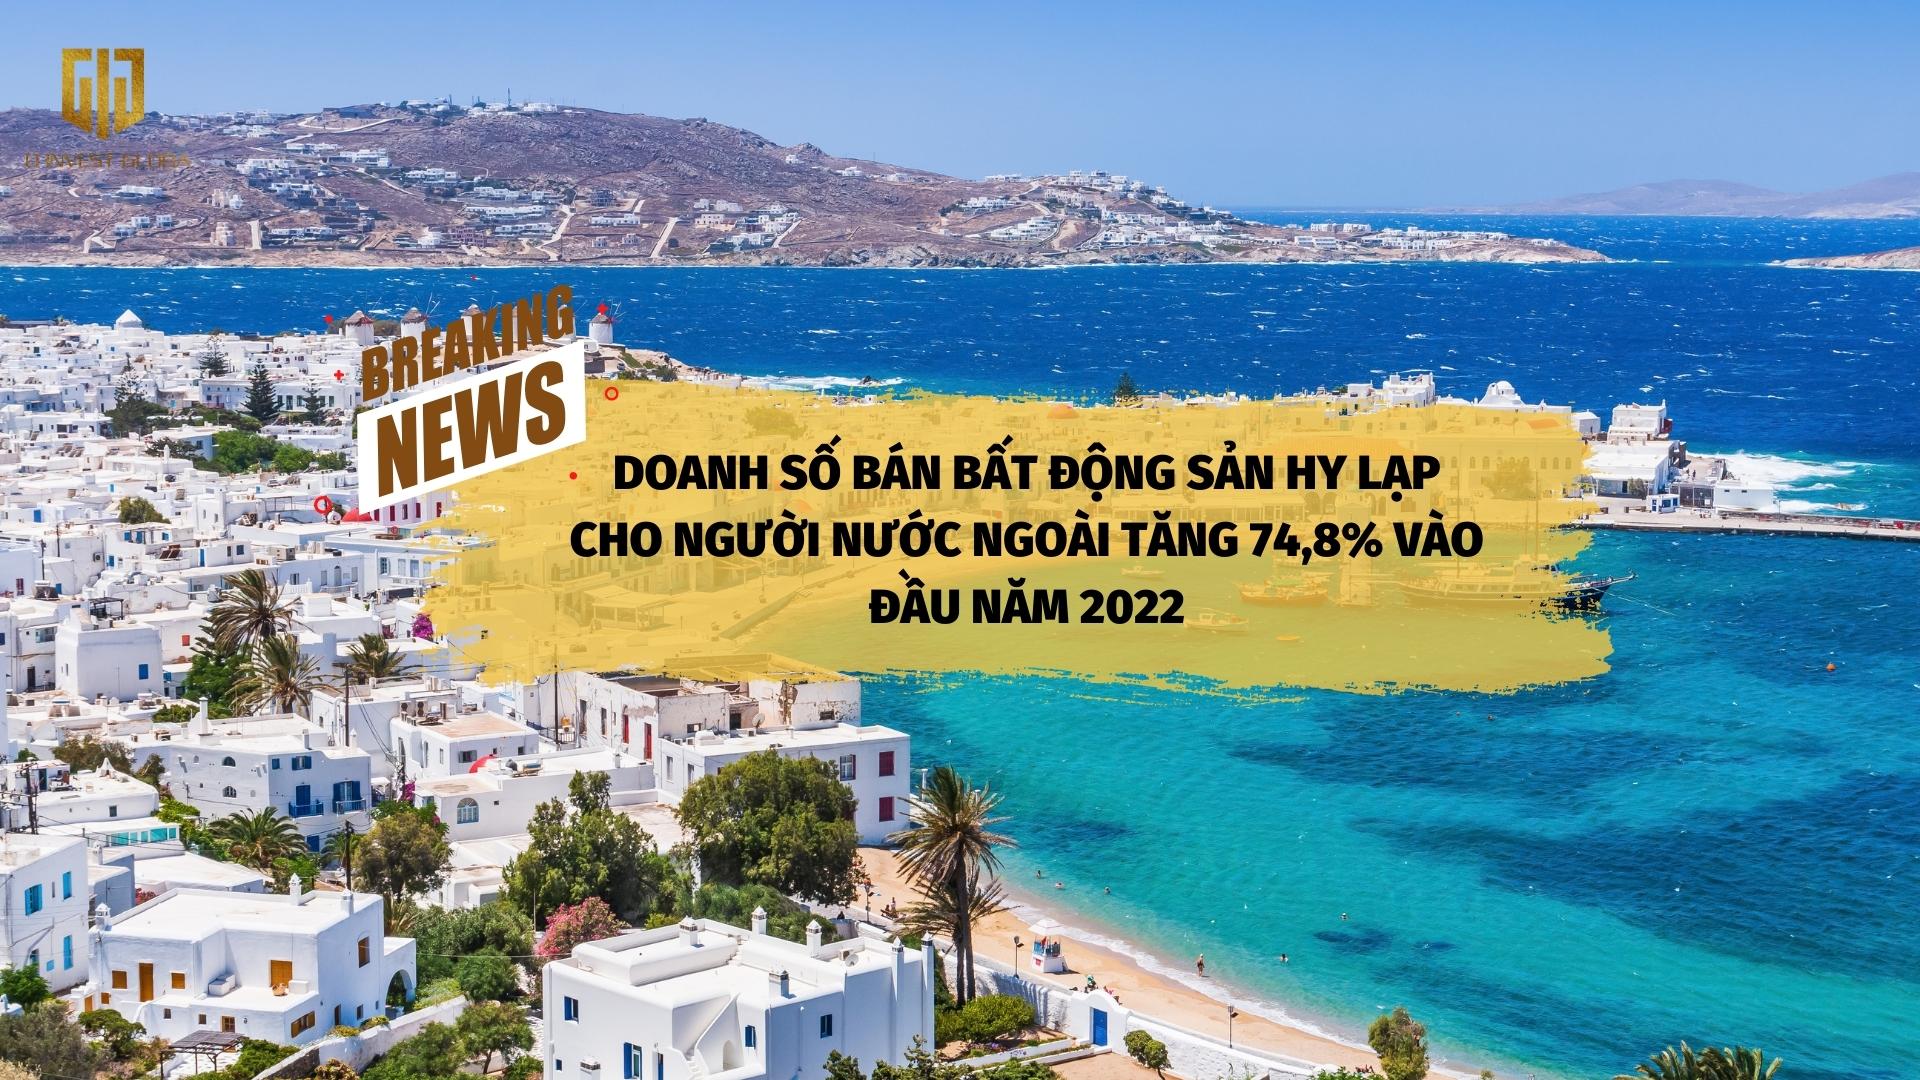 Doanh số bán bất động sản Hy Lạp cho người nước ngoài tăng 74,8% vào đầu năm 2022